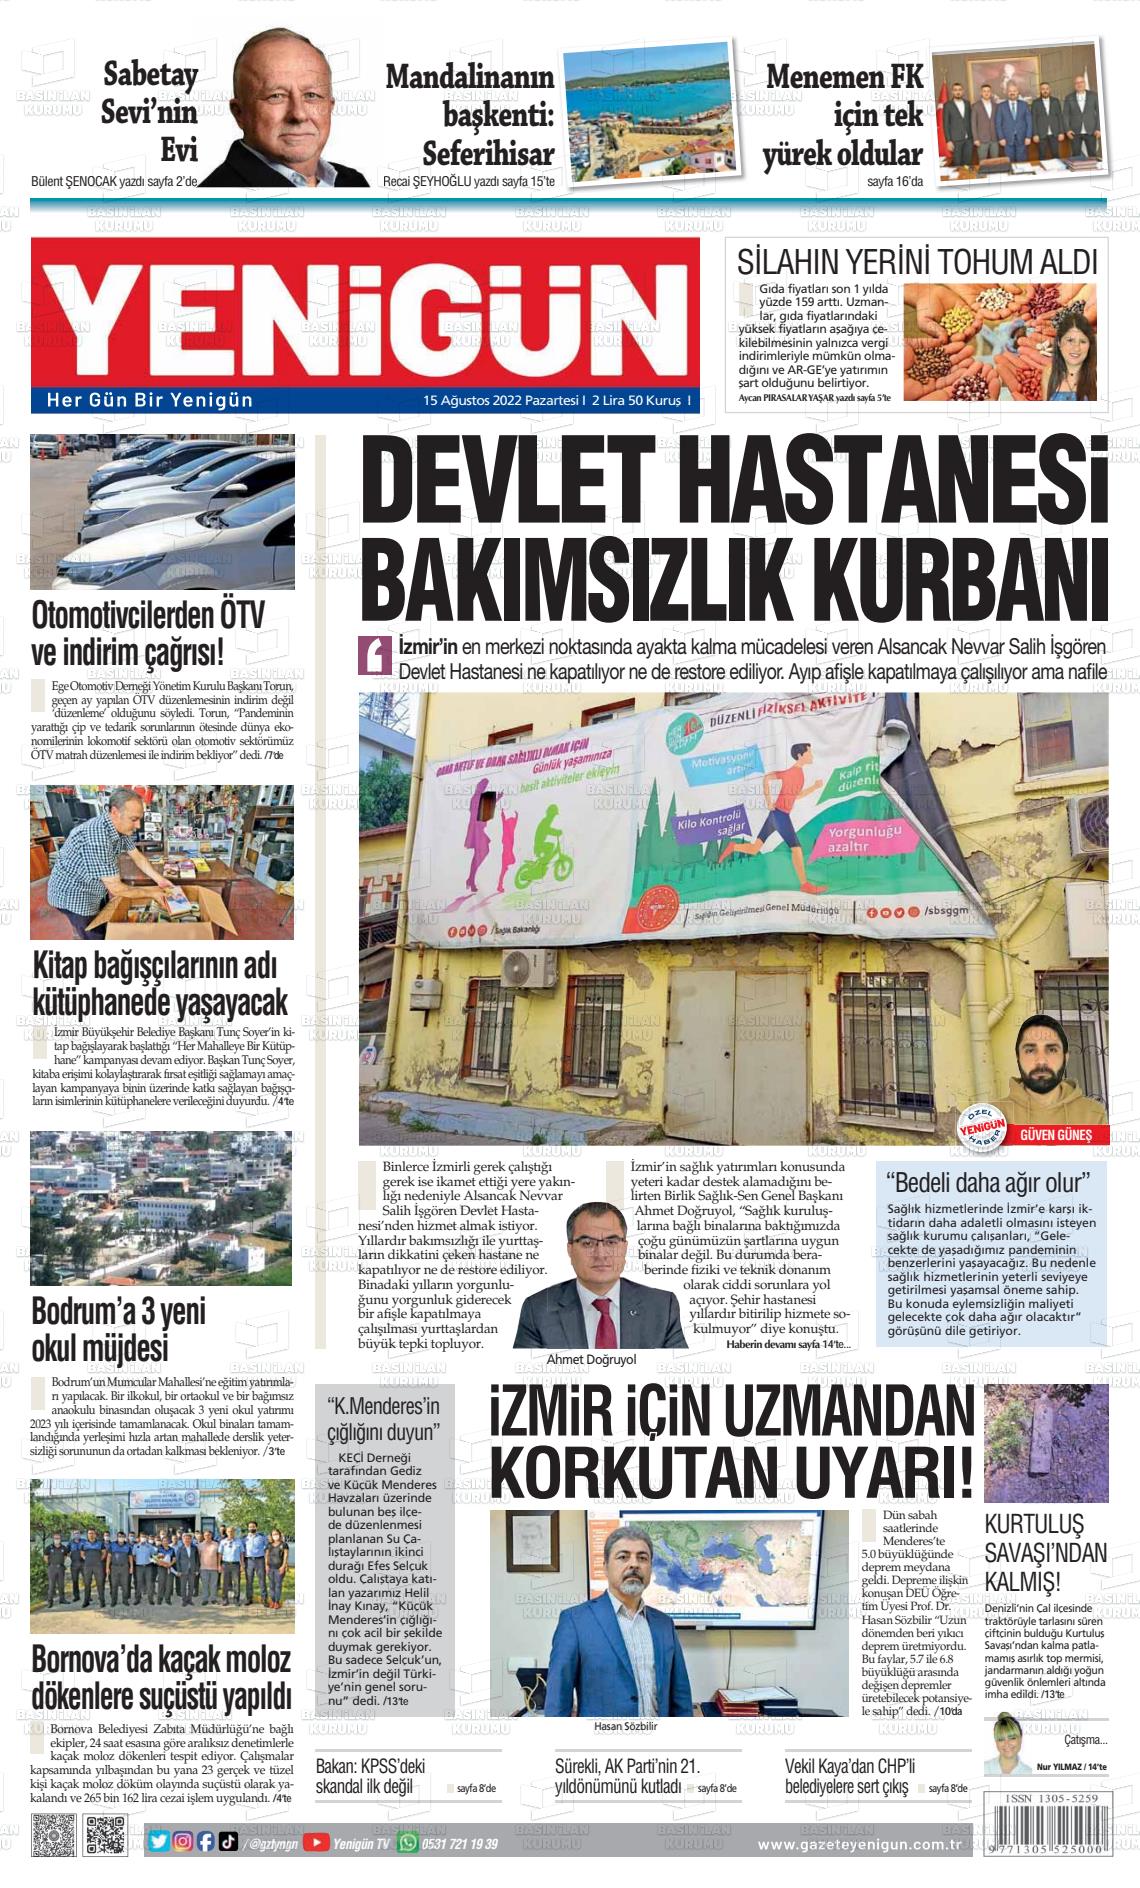 15 Ağustos 2022 Yeni Gün Gazete Manşeti